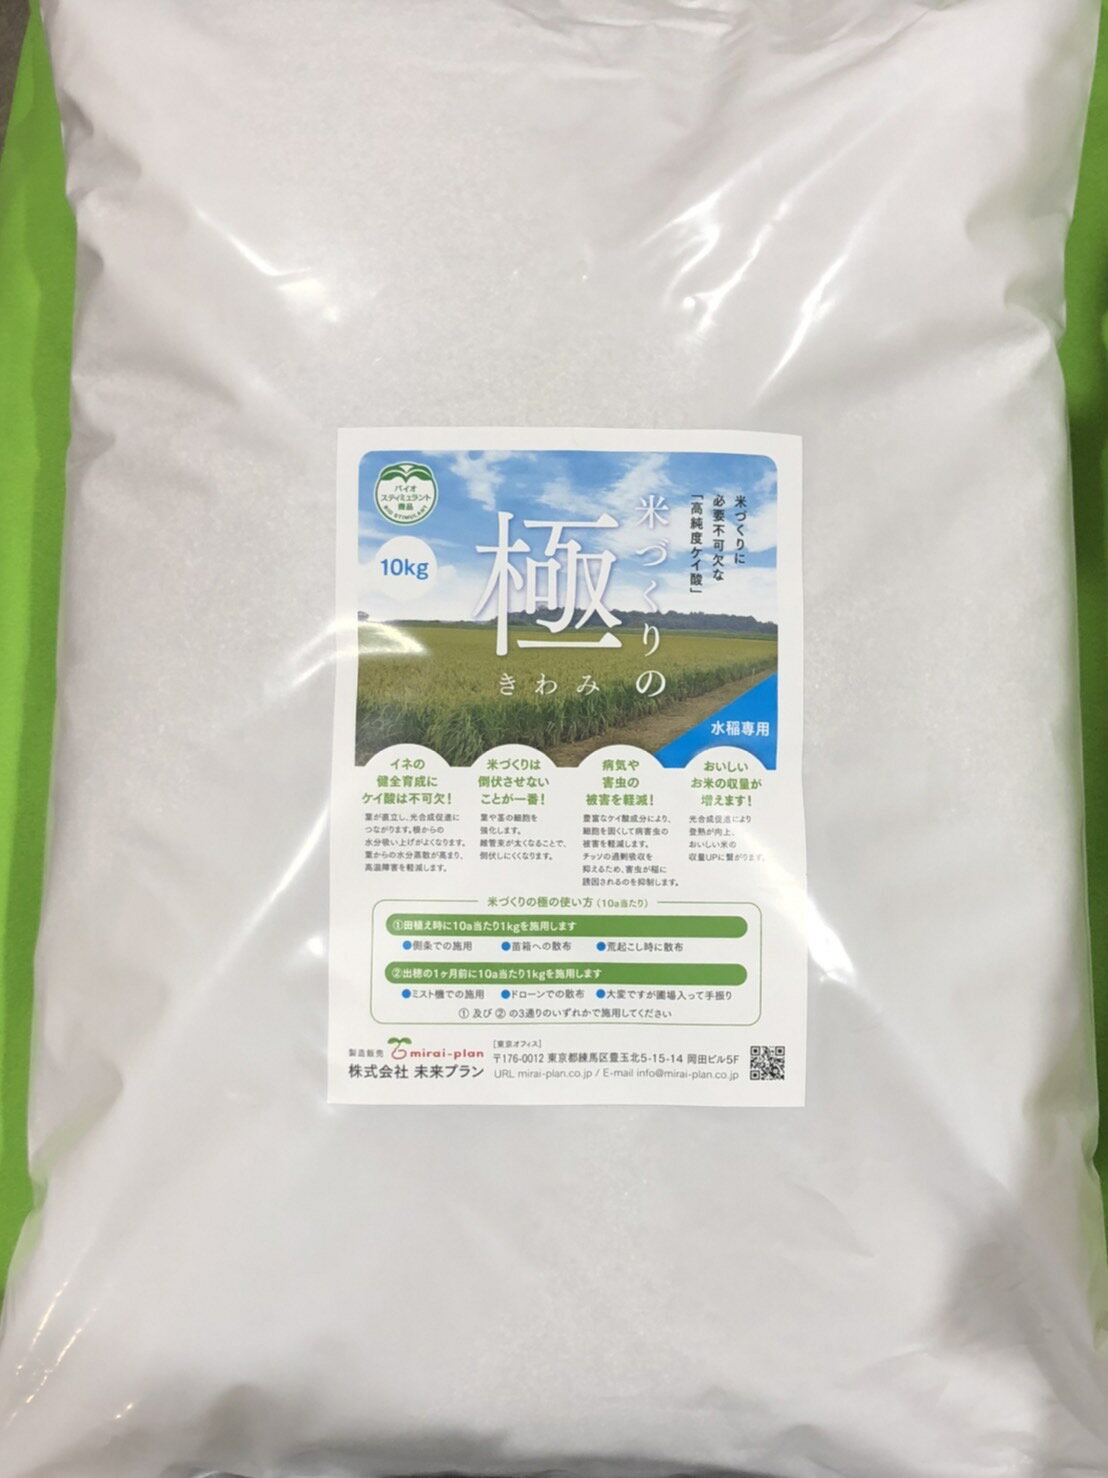 ケイカルに代わる新商品！1反たったの2kgで効果アリ！　米づくりの極（きわみ）　10kg　5反（5000平米、50a、1500坪）分　バイオスティミュラント（bio stimulant）商品　ケイカルの代用品として省力化にお役立てください。